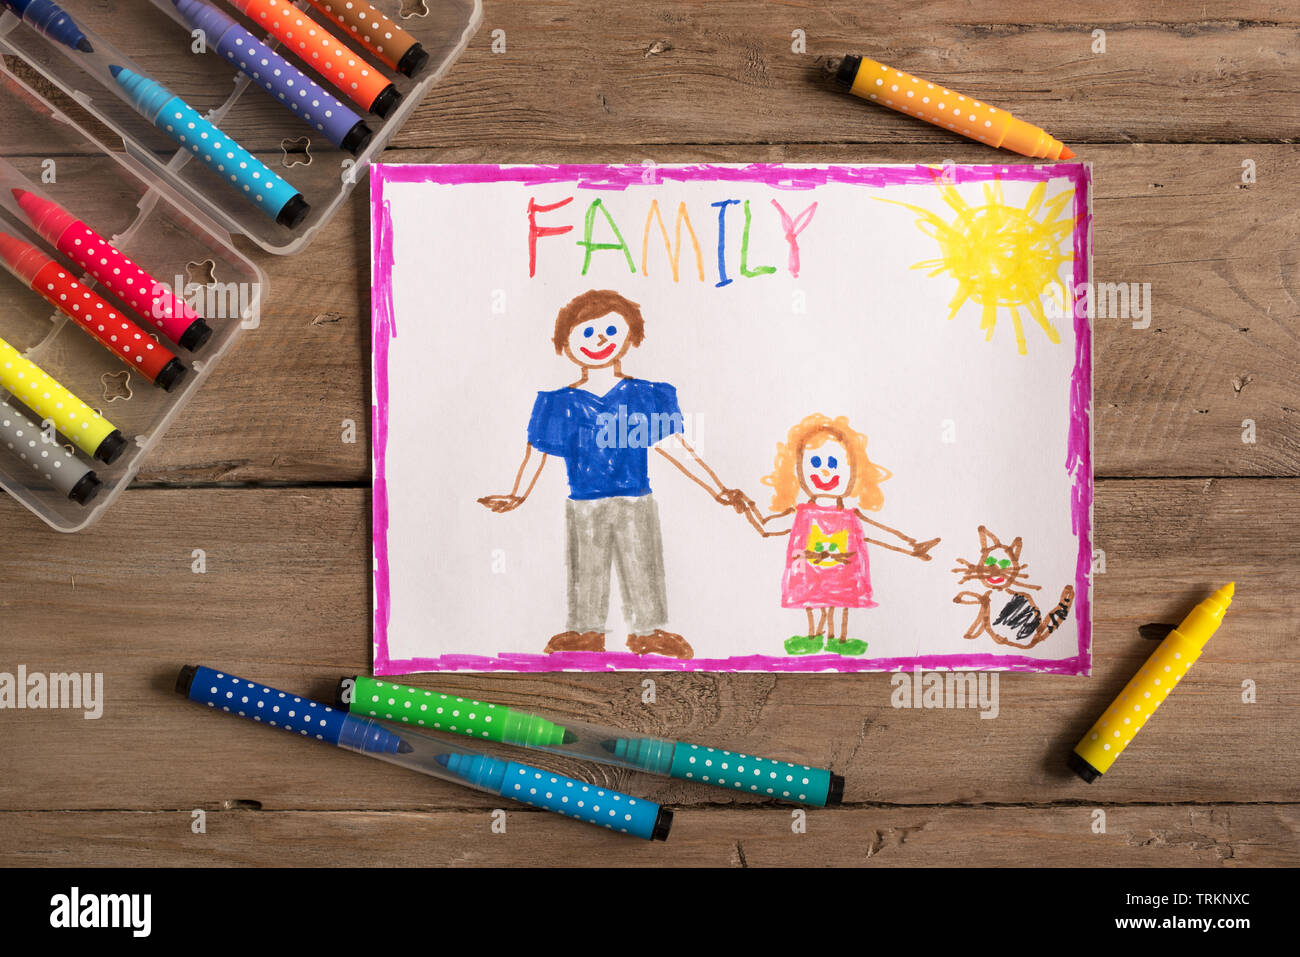 Kinder- zeichnung der Familie mit Vater und Tochter. Unvollständige Familie Konzept. Stockfoto